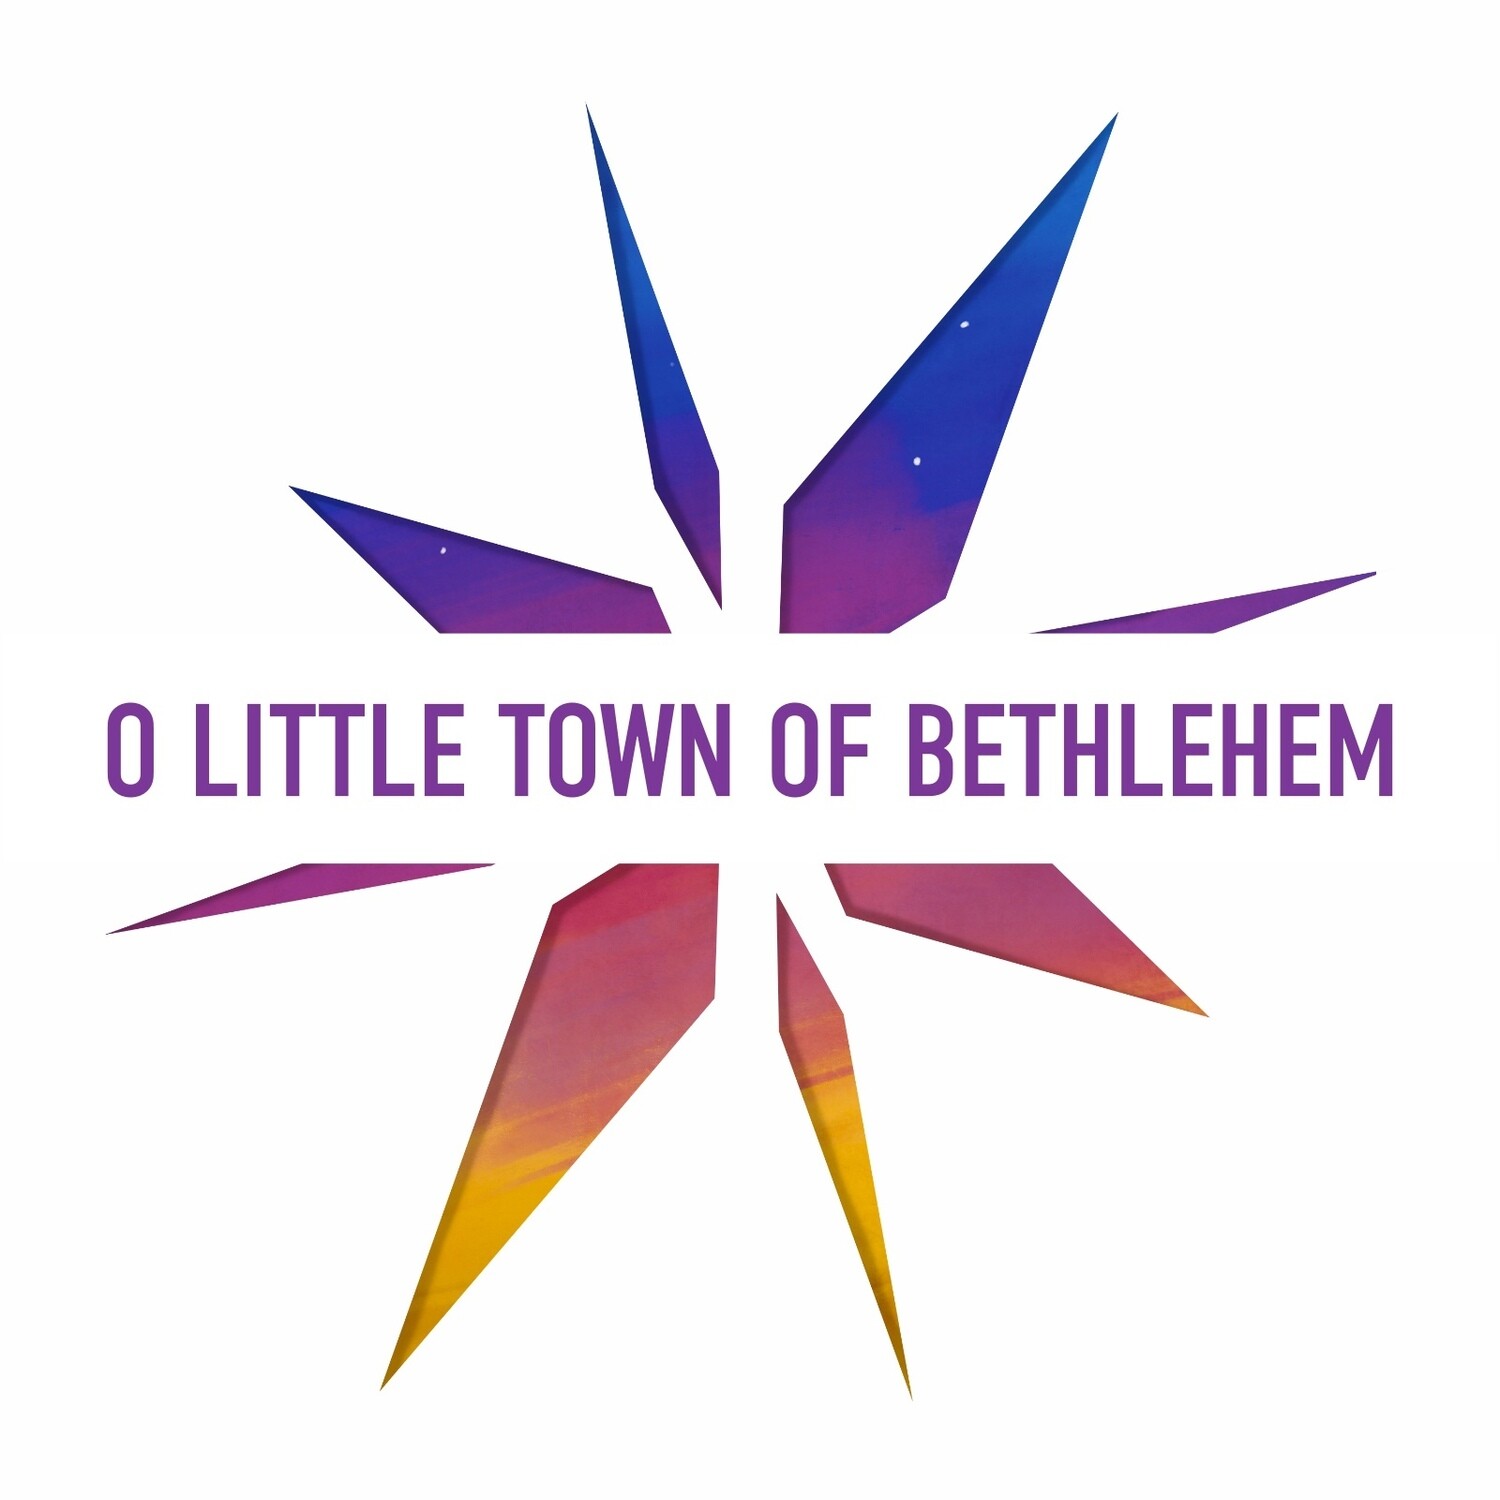 O Little Town Of Bethlehem (Split track)